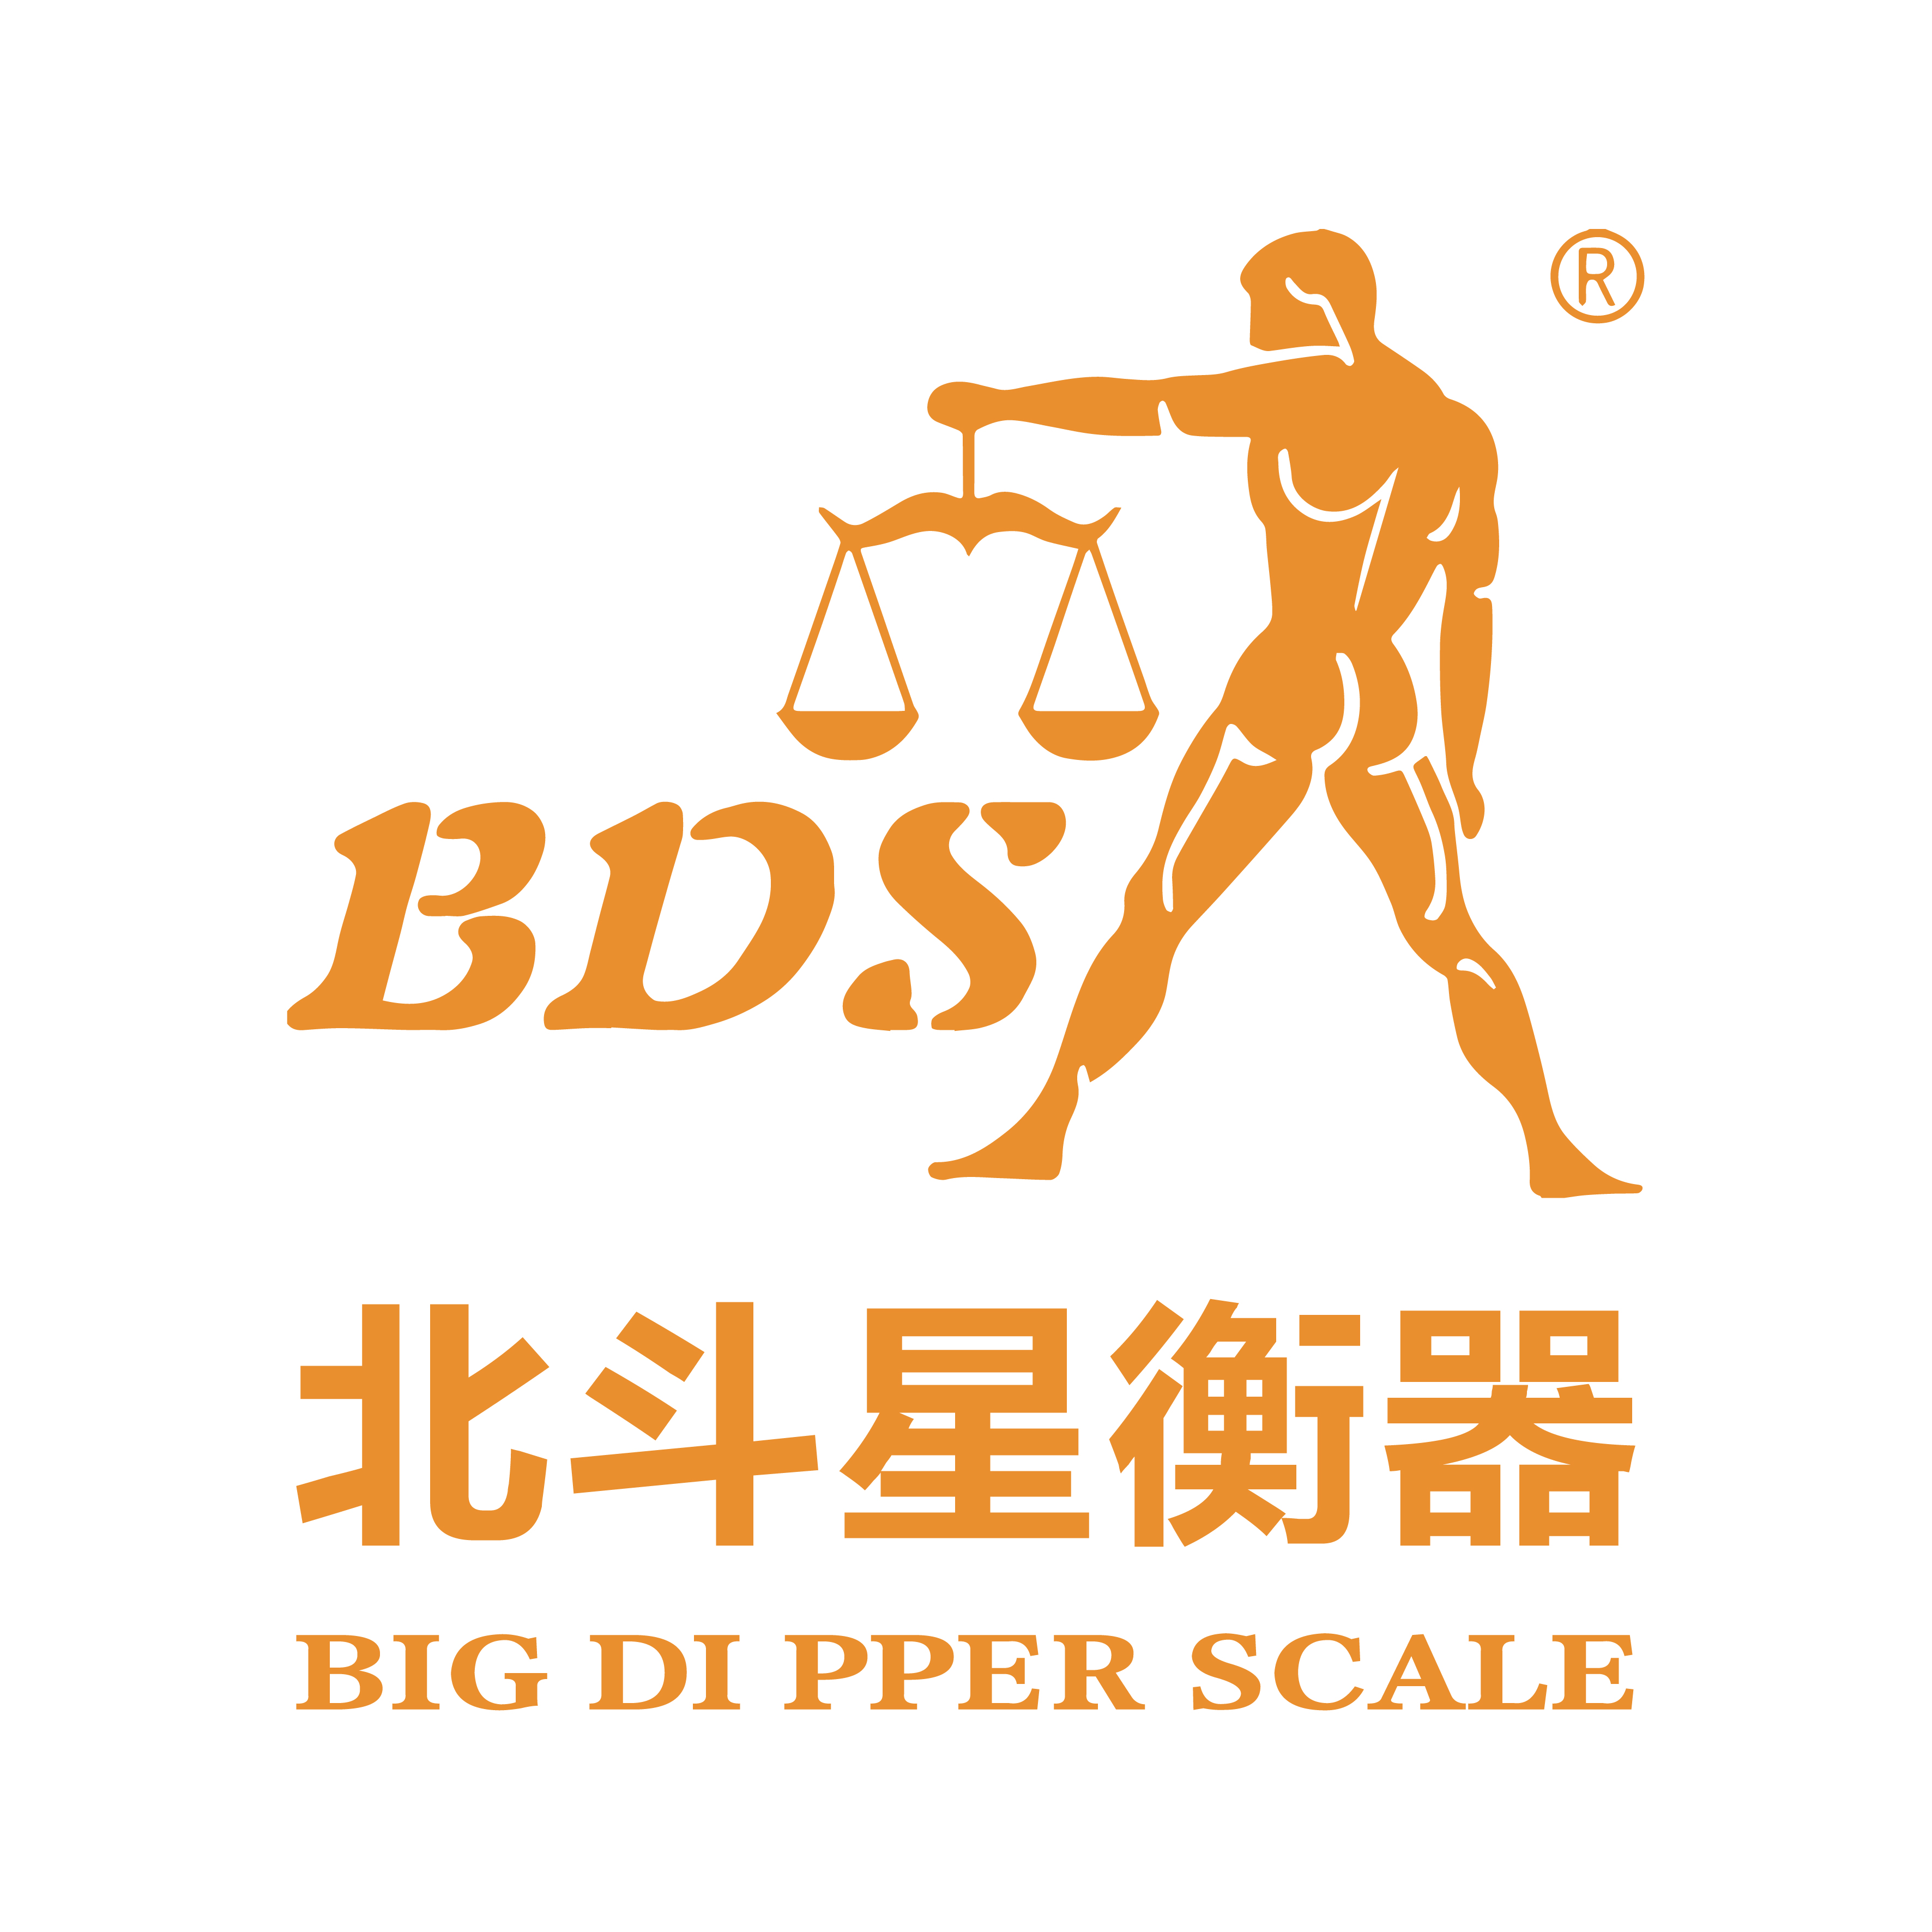 Big Dipper Scale